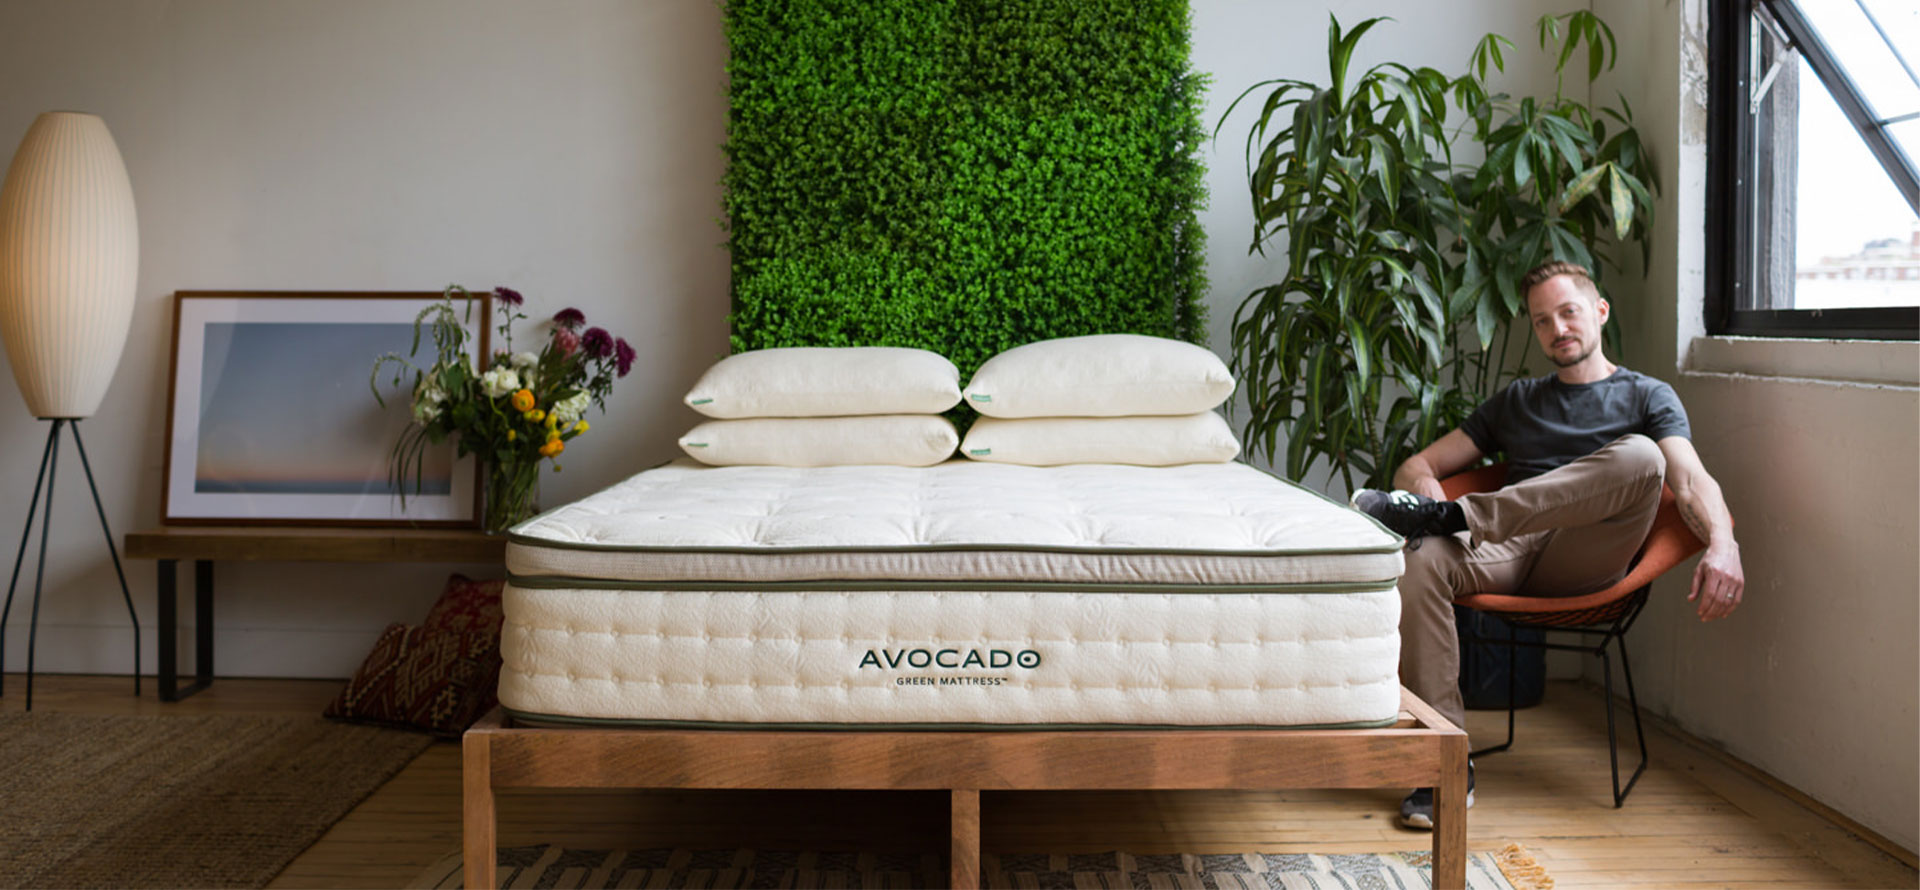 Avocado mattress in room.